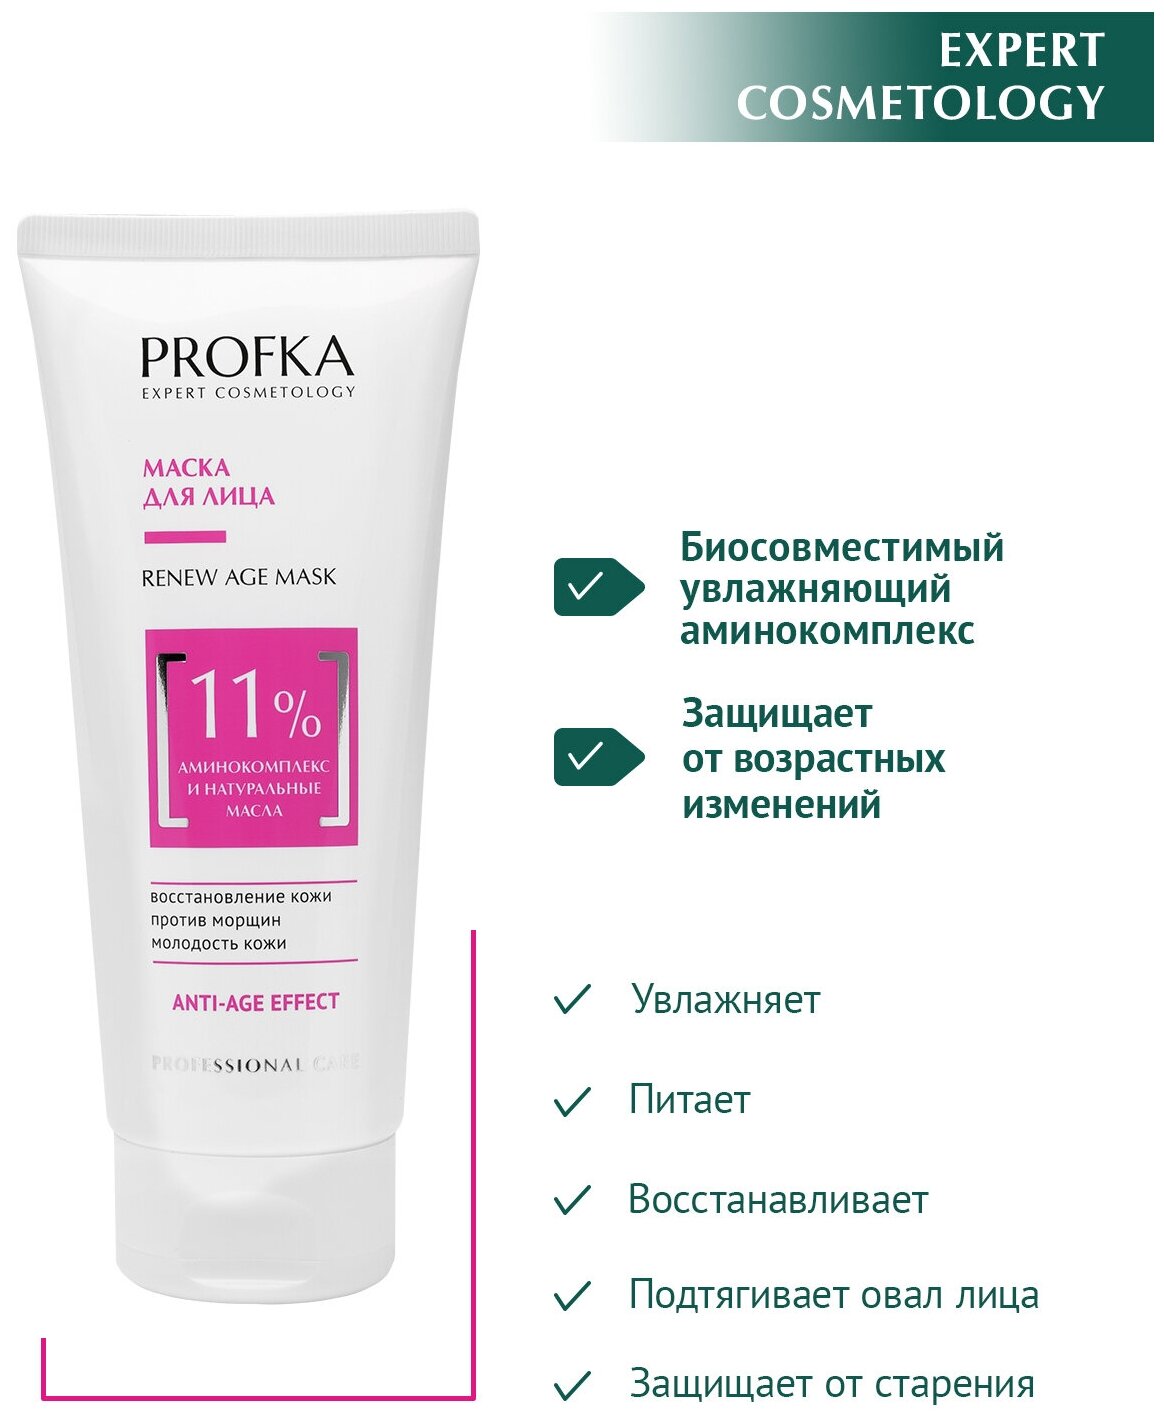 PROFKA Expert Cosmetology Маска для лица RENEW Age Mask с аминокомплексом и натуральными маслами, 175 мл